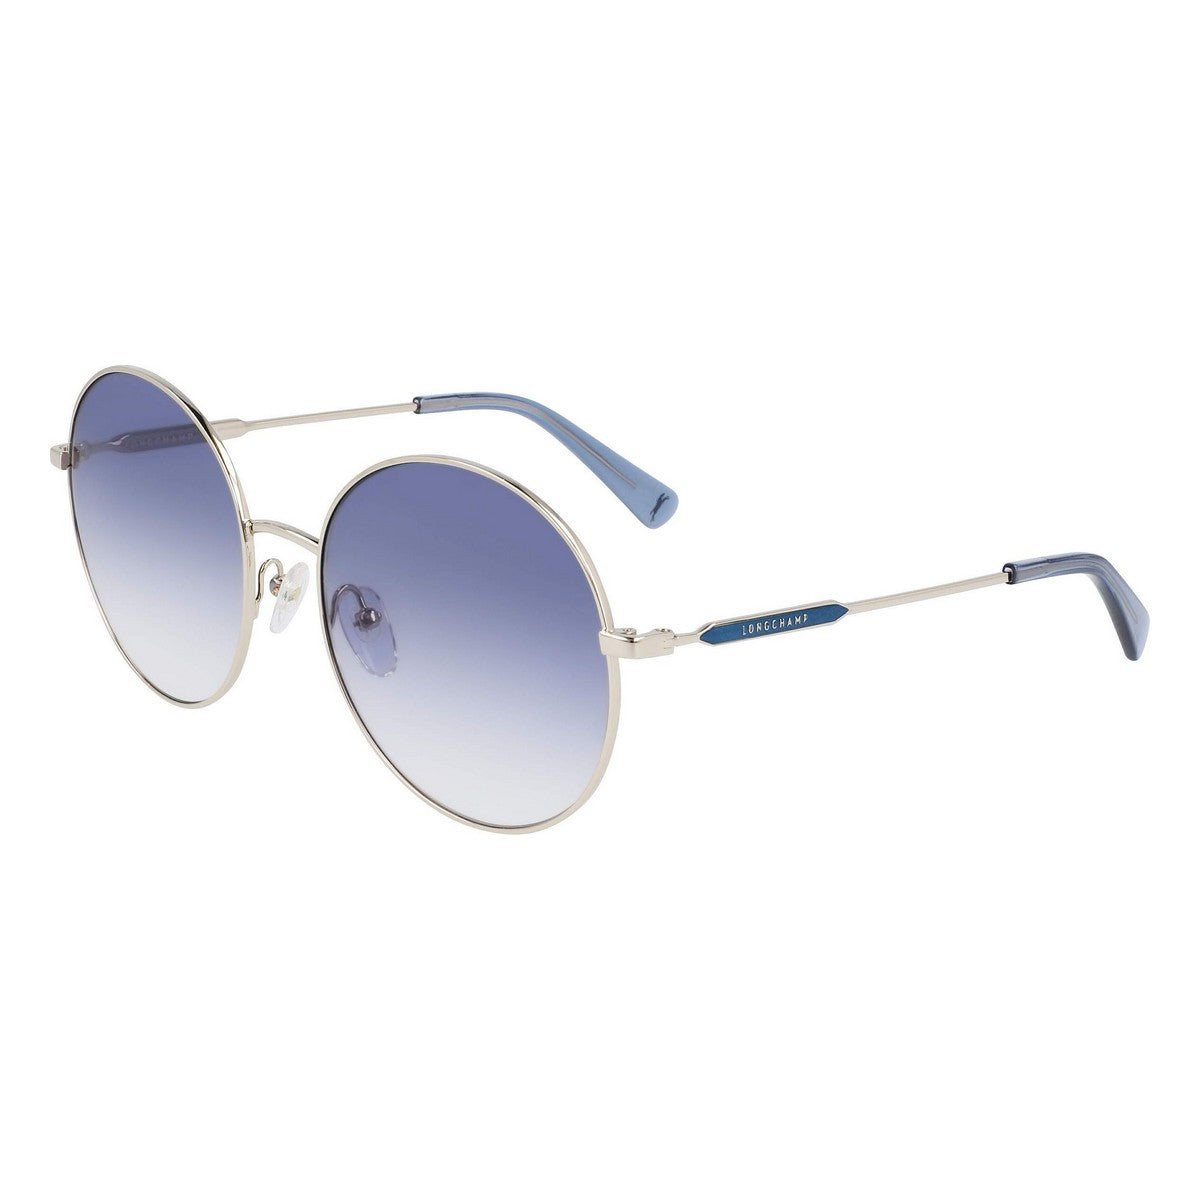 Kaufe Damensonnenbrille Longchamp LO143S-719 ø 58 mm bei AWK Flagship um € 71.00